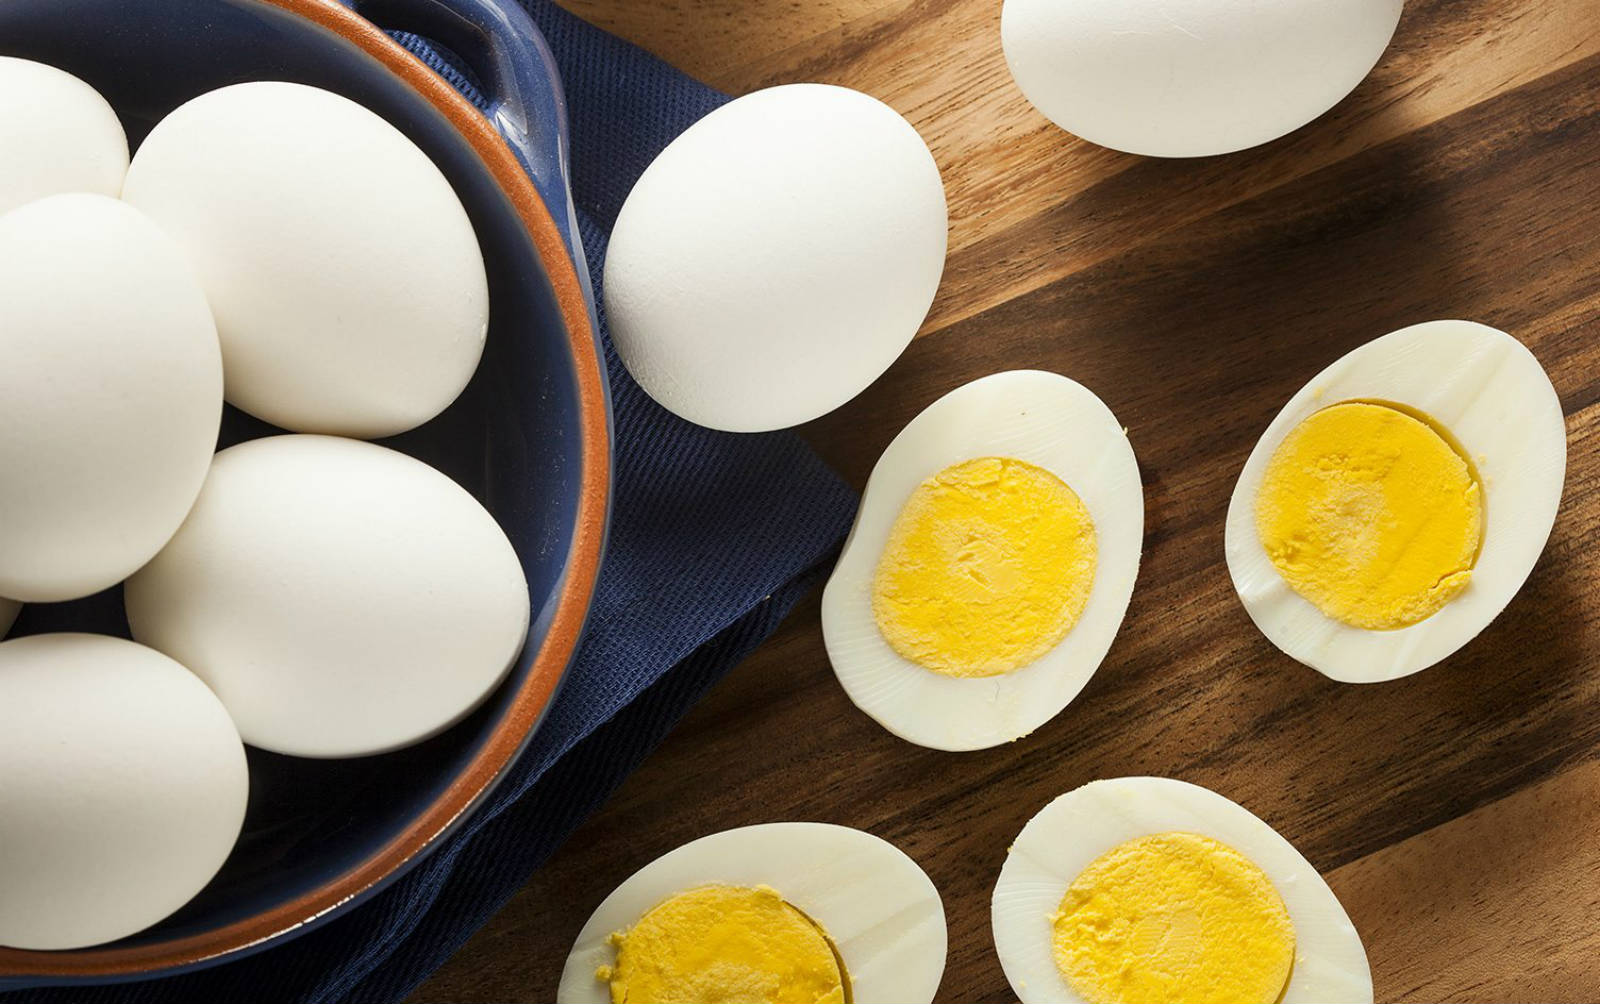 Berapa Banyak Telur Yang Selamat Untuk Pesakit Kolesterol Yang Dimakan Setiap Hari?